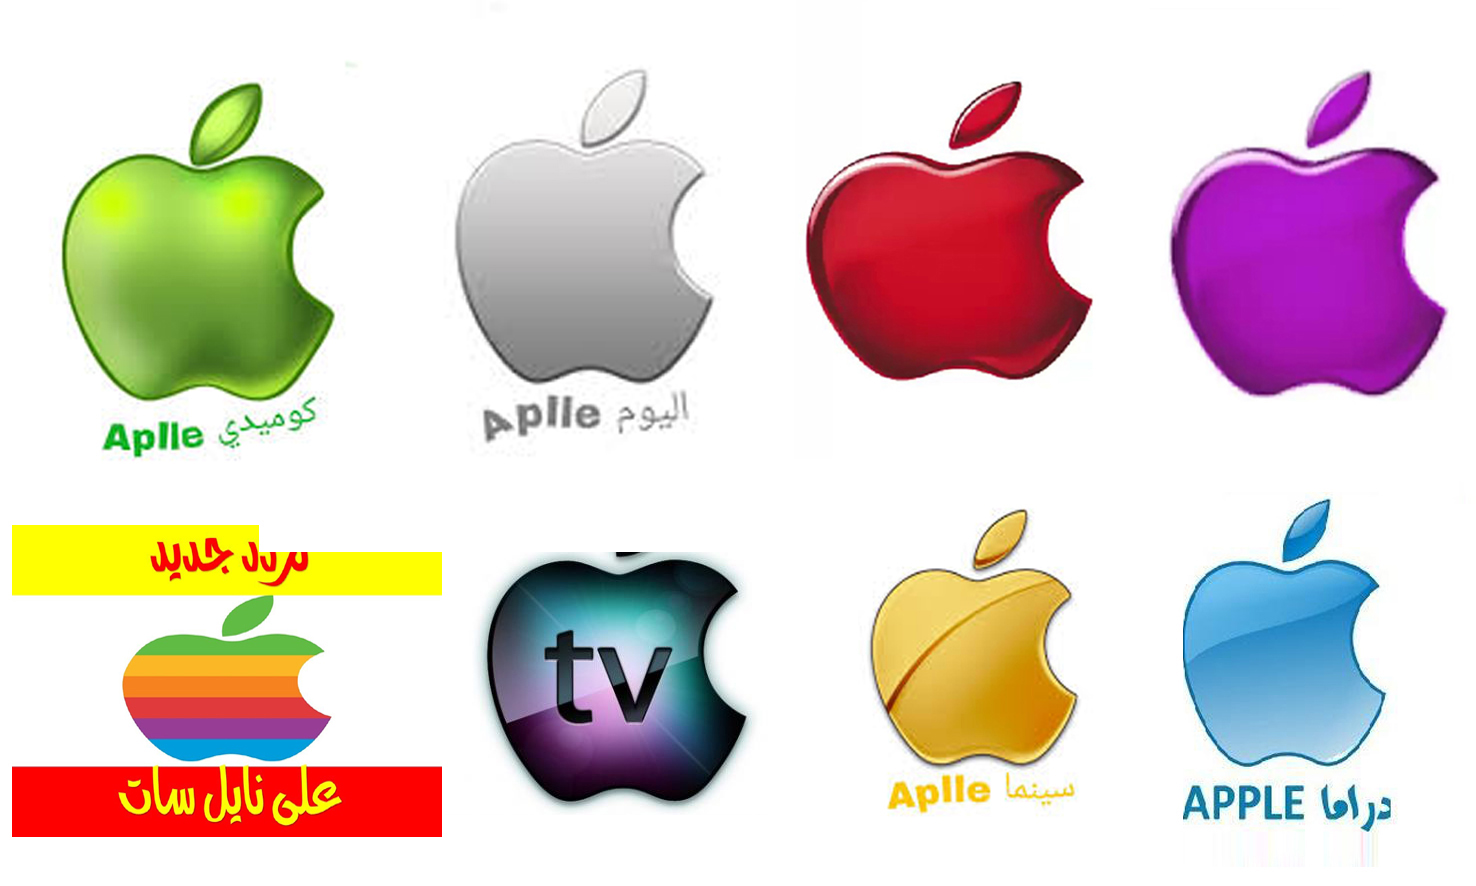 قنوات “التفاحة” تردد قناة أبل الجديد Apple Channels “مارس 2020” على نايل سات “دراما كوميدي”